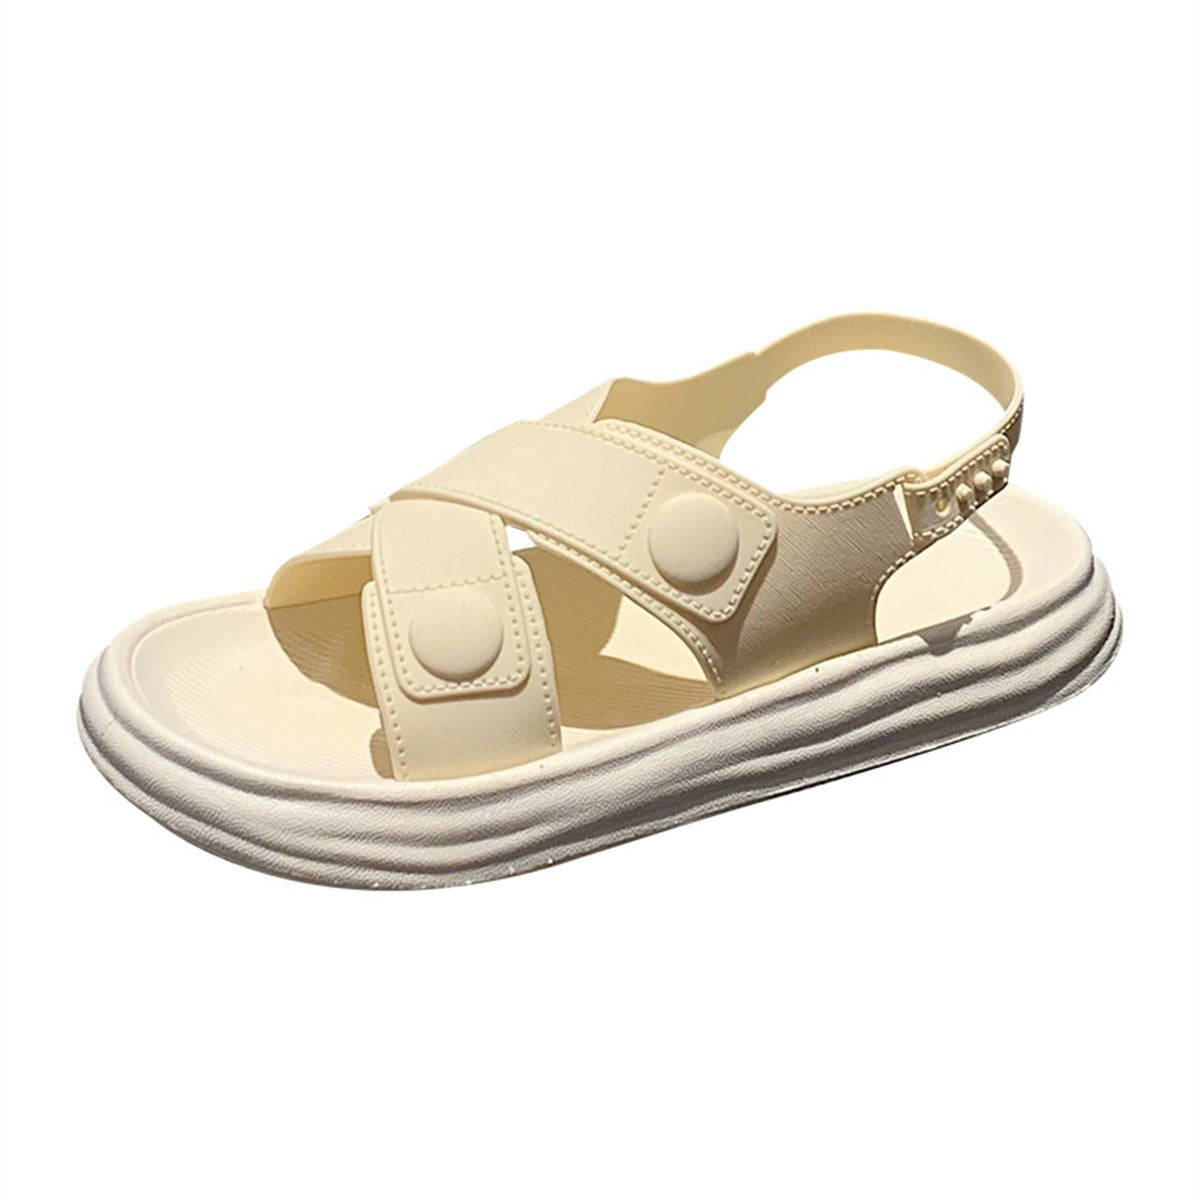 women's summer casual outer wear soft thick bottom beach sandals